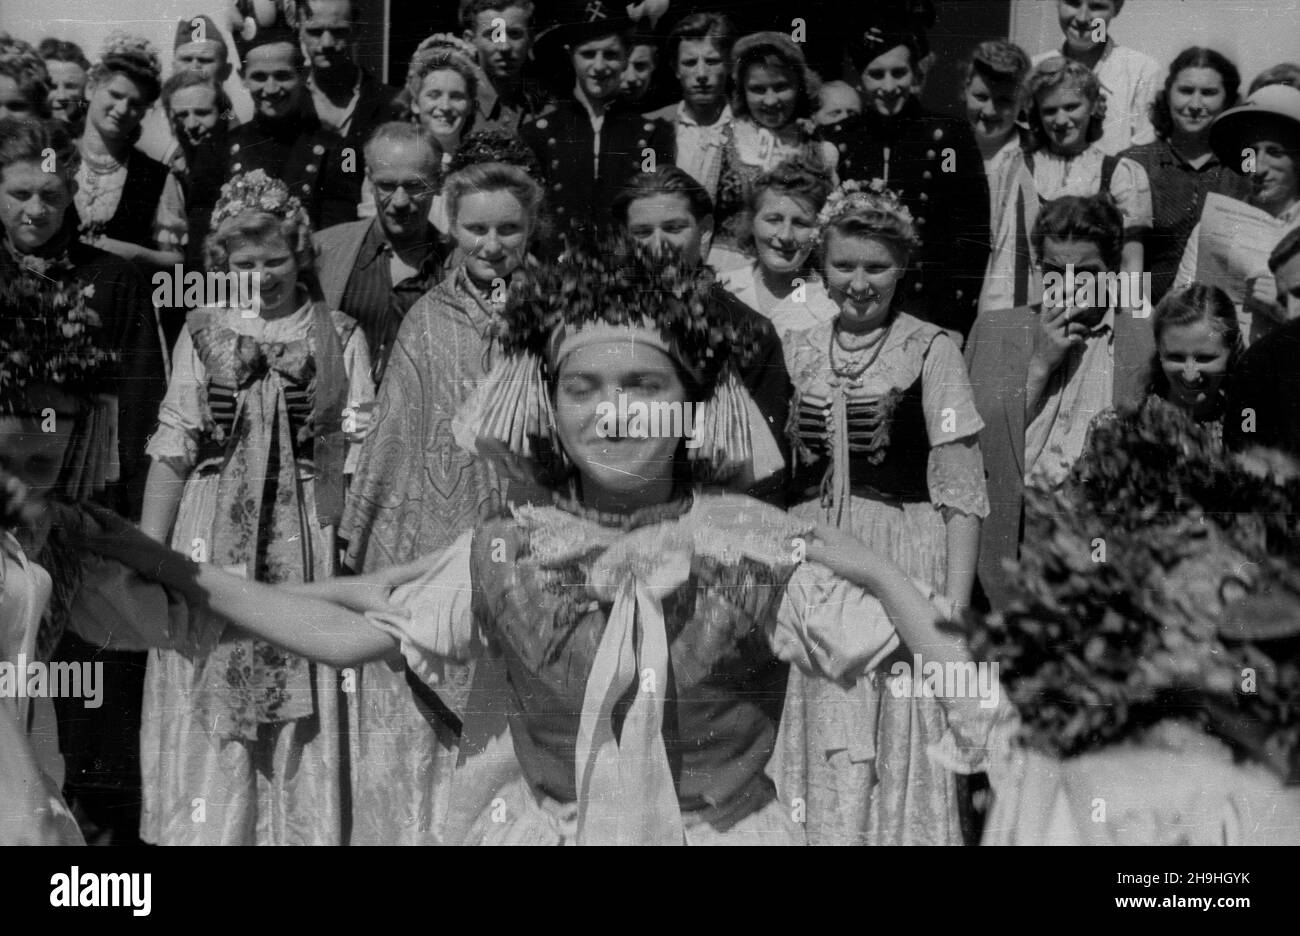 Wroc³aw, 1948-08. Wystawa Ziem Odzyskanych (21 lipca-31 paŸdziernika). Codziennie o godzinie 17 przed Pawilonem Wsi Polski Ludowej wystêpuj¹ amatorskie zespo³y taneczne z ró¿nych regionów kraju.  ka  PAP  Dok³adny dzieñ wydarzenia nieustalony.      Wroclaw, Aug. 1948. The Exhibition of the Regained Territories (July 21-October 31). Amateur dancing groups from Poland's various regions performed every day at 1700 hrs in front of the Pavilion of the Countryside of the Polish People's Republic.   ka  PAP Stock Photo